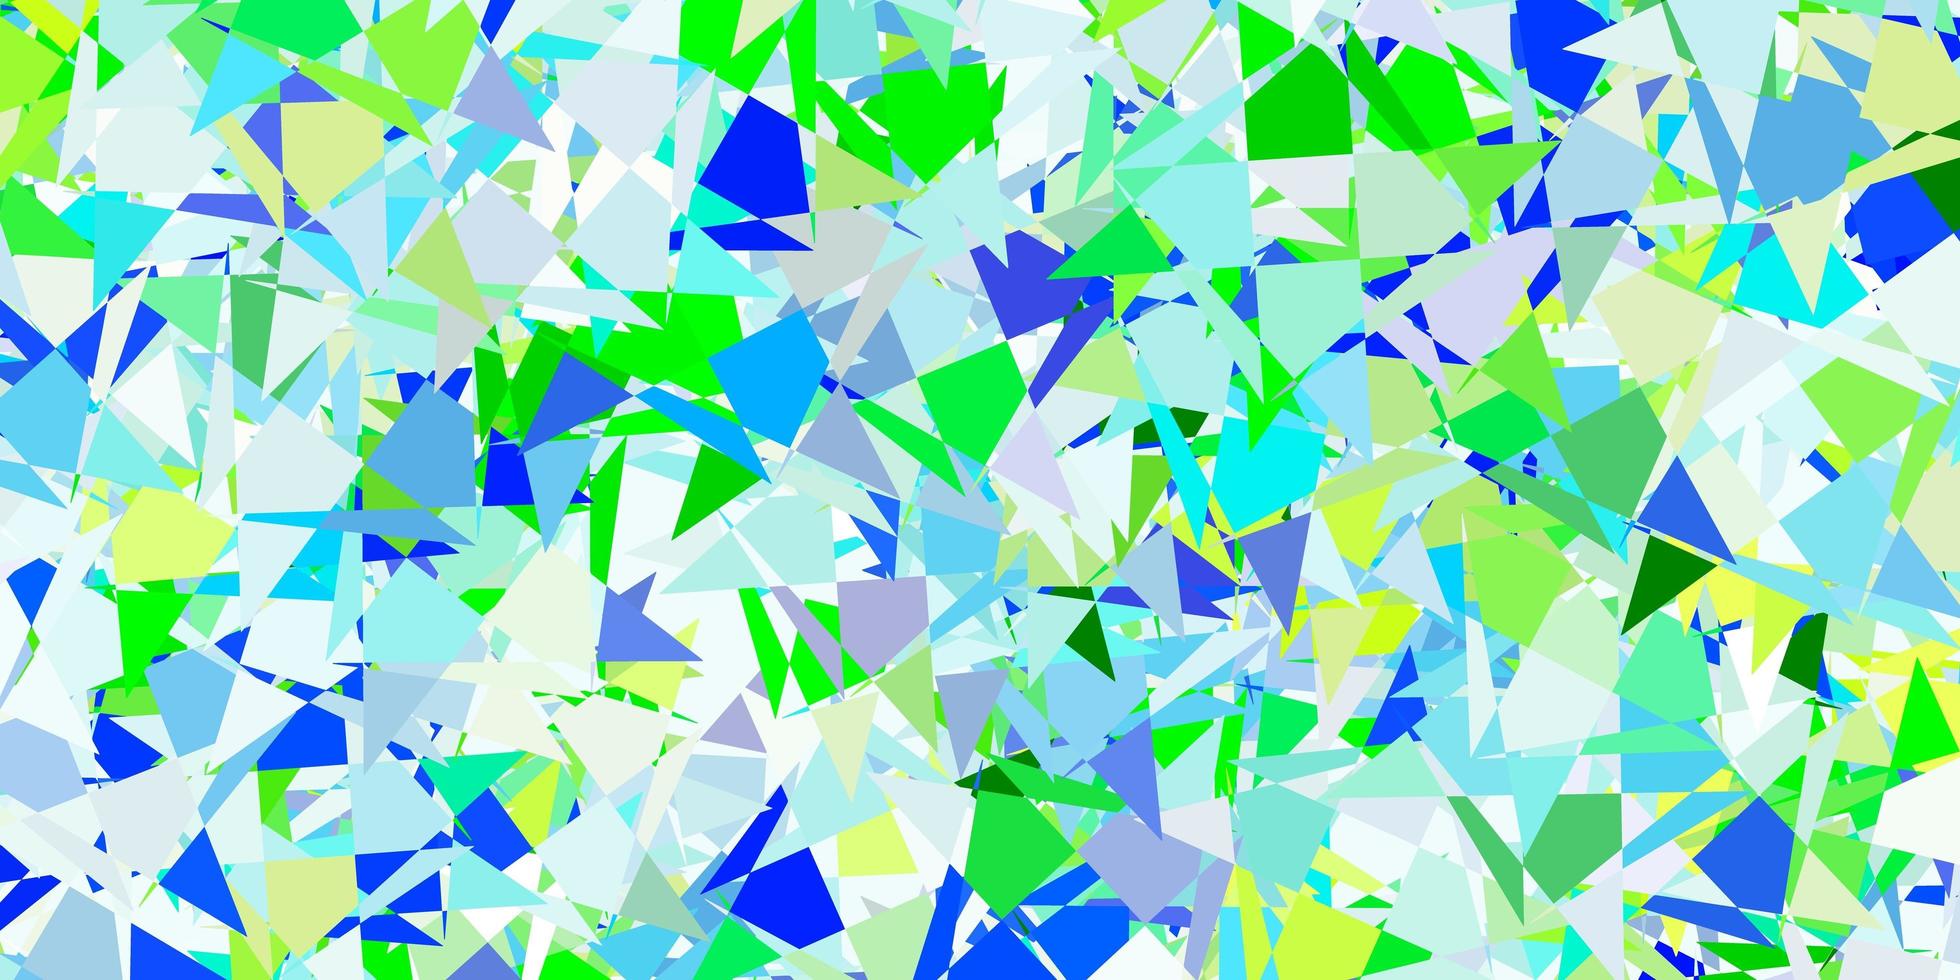 disposition de vecteur bleu clair, vert avec des formes triangulaires.